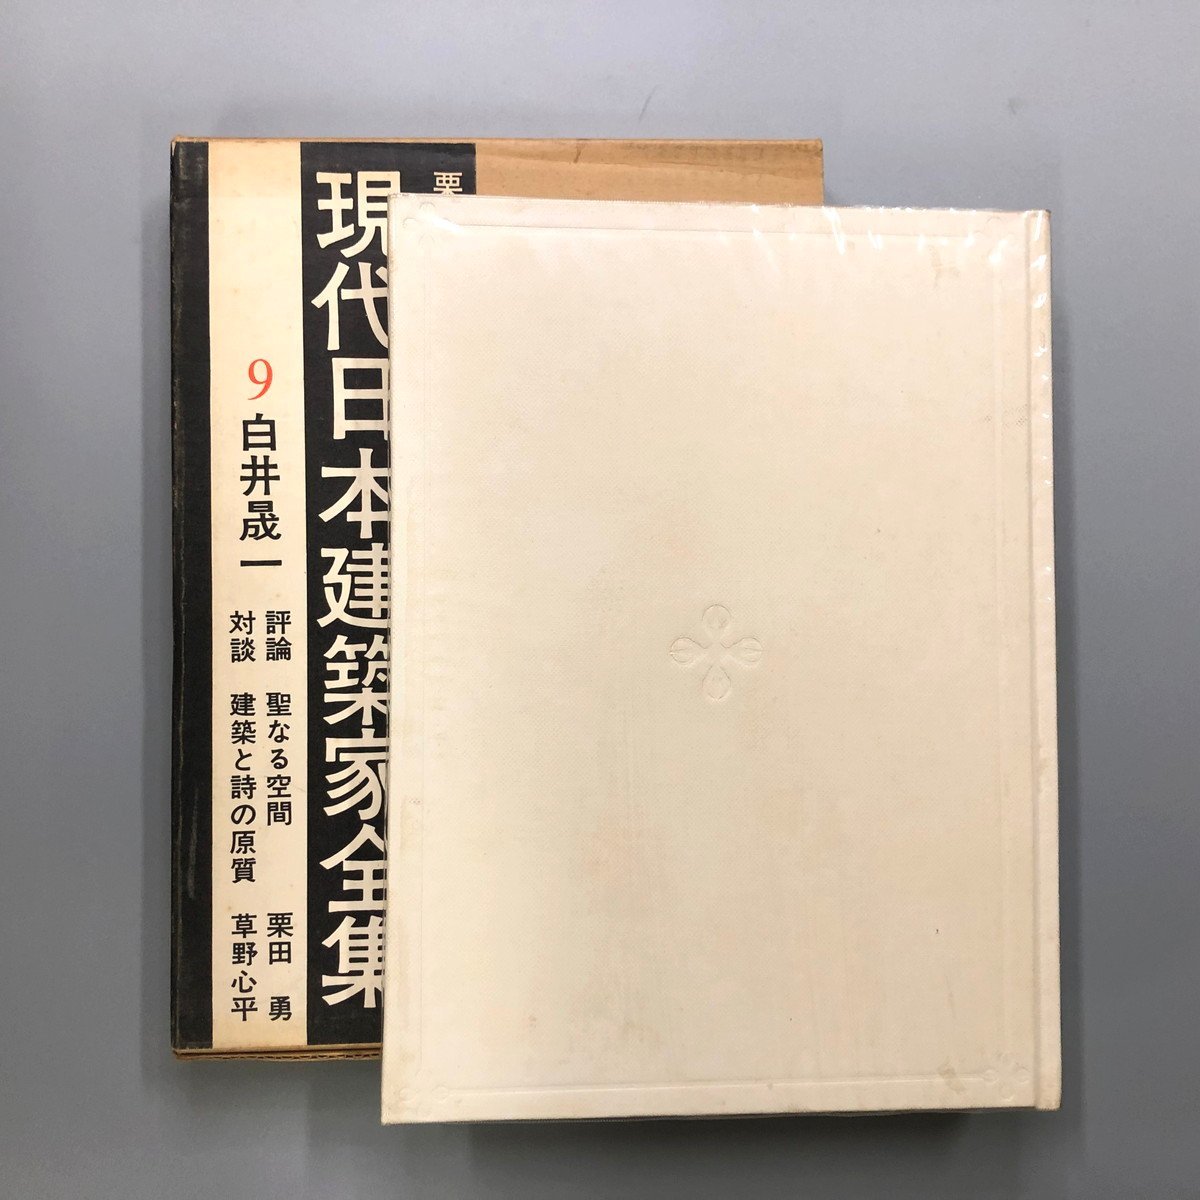 『 現代日本建築家全集 9 白井晟一 』 栗田勇 1970年 初版 三一書房_画像2